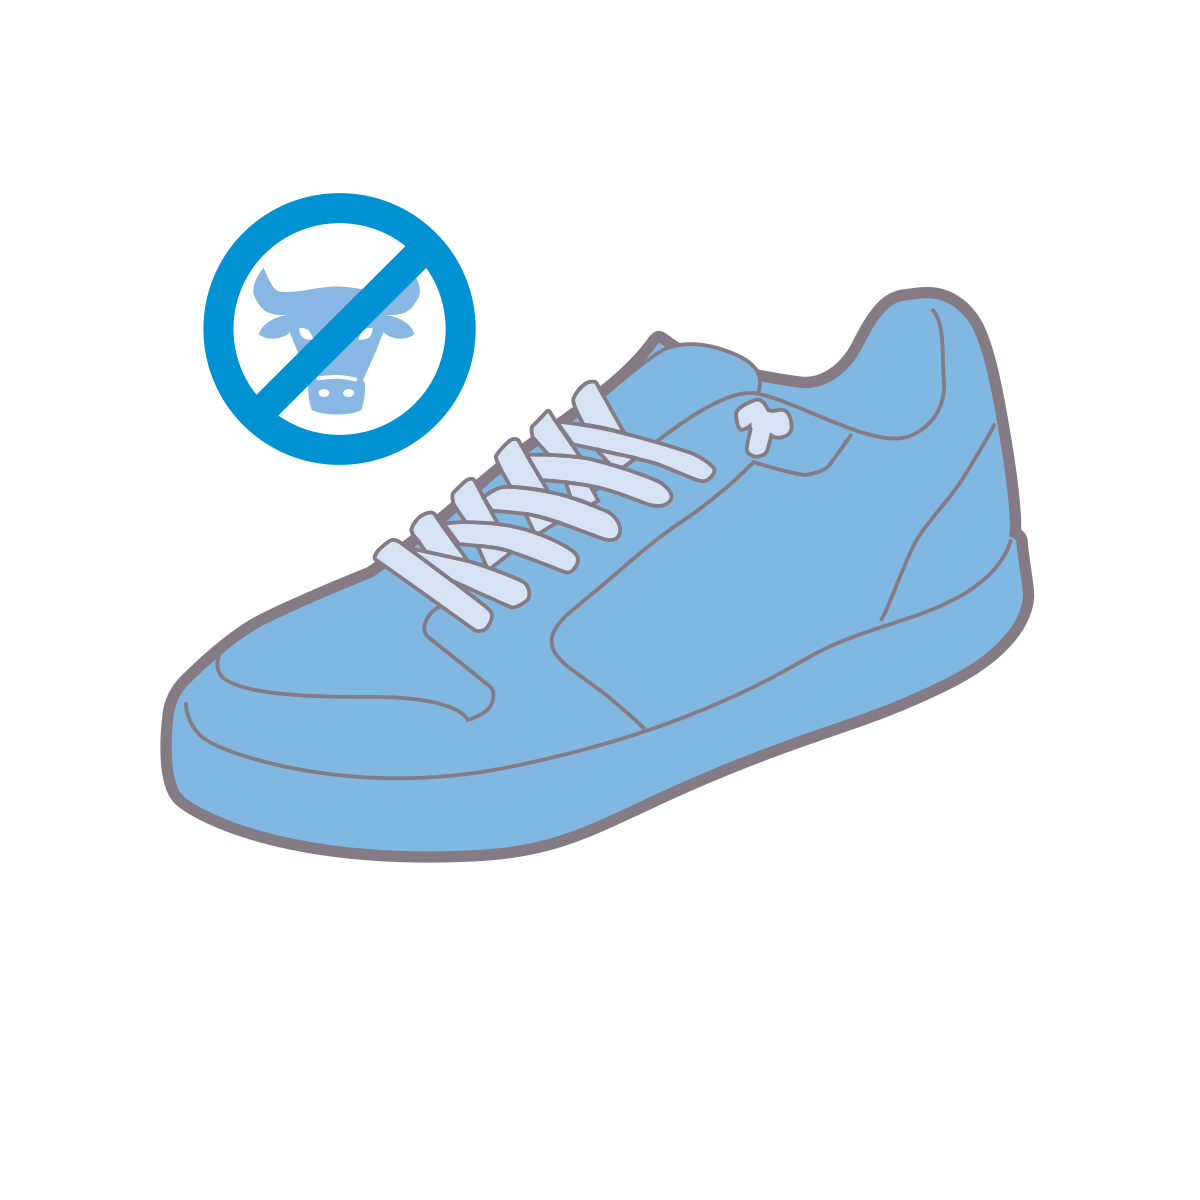 Ohne Einsatz tierischer Materialien - VADO Shoes